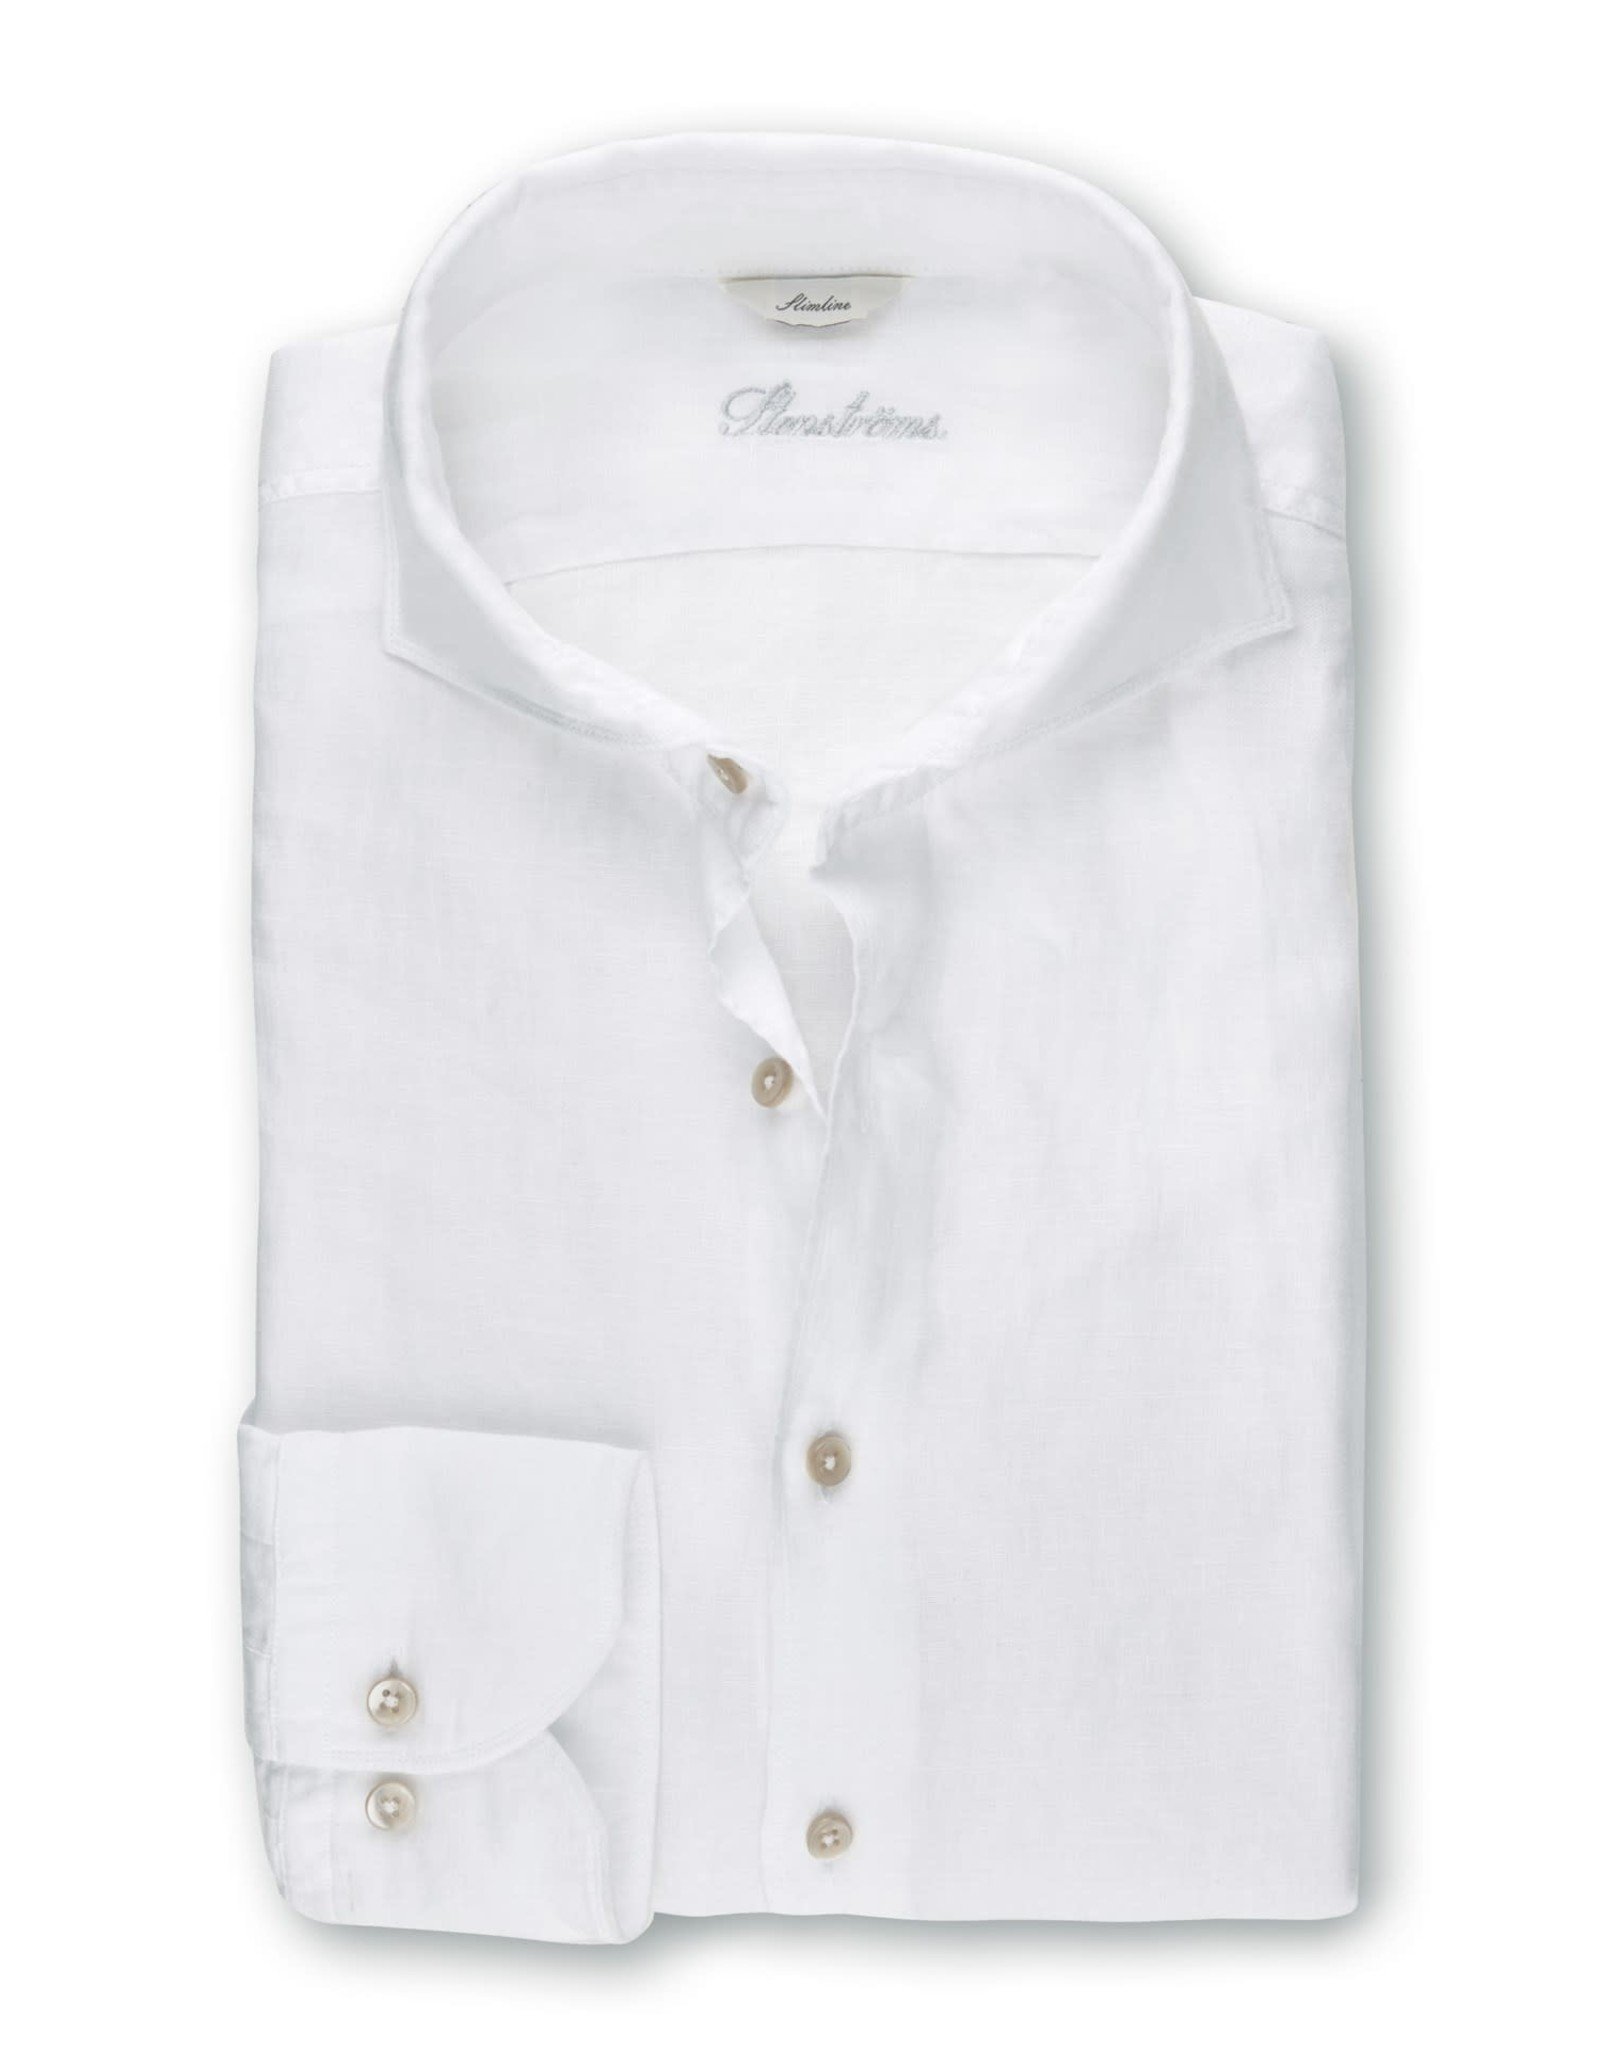 Stenströms Stenströms shirt linen white Slimline